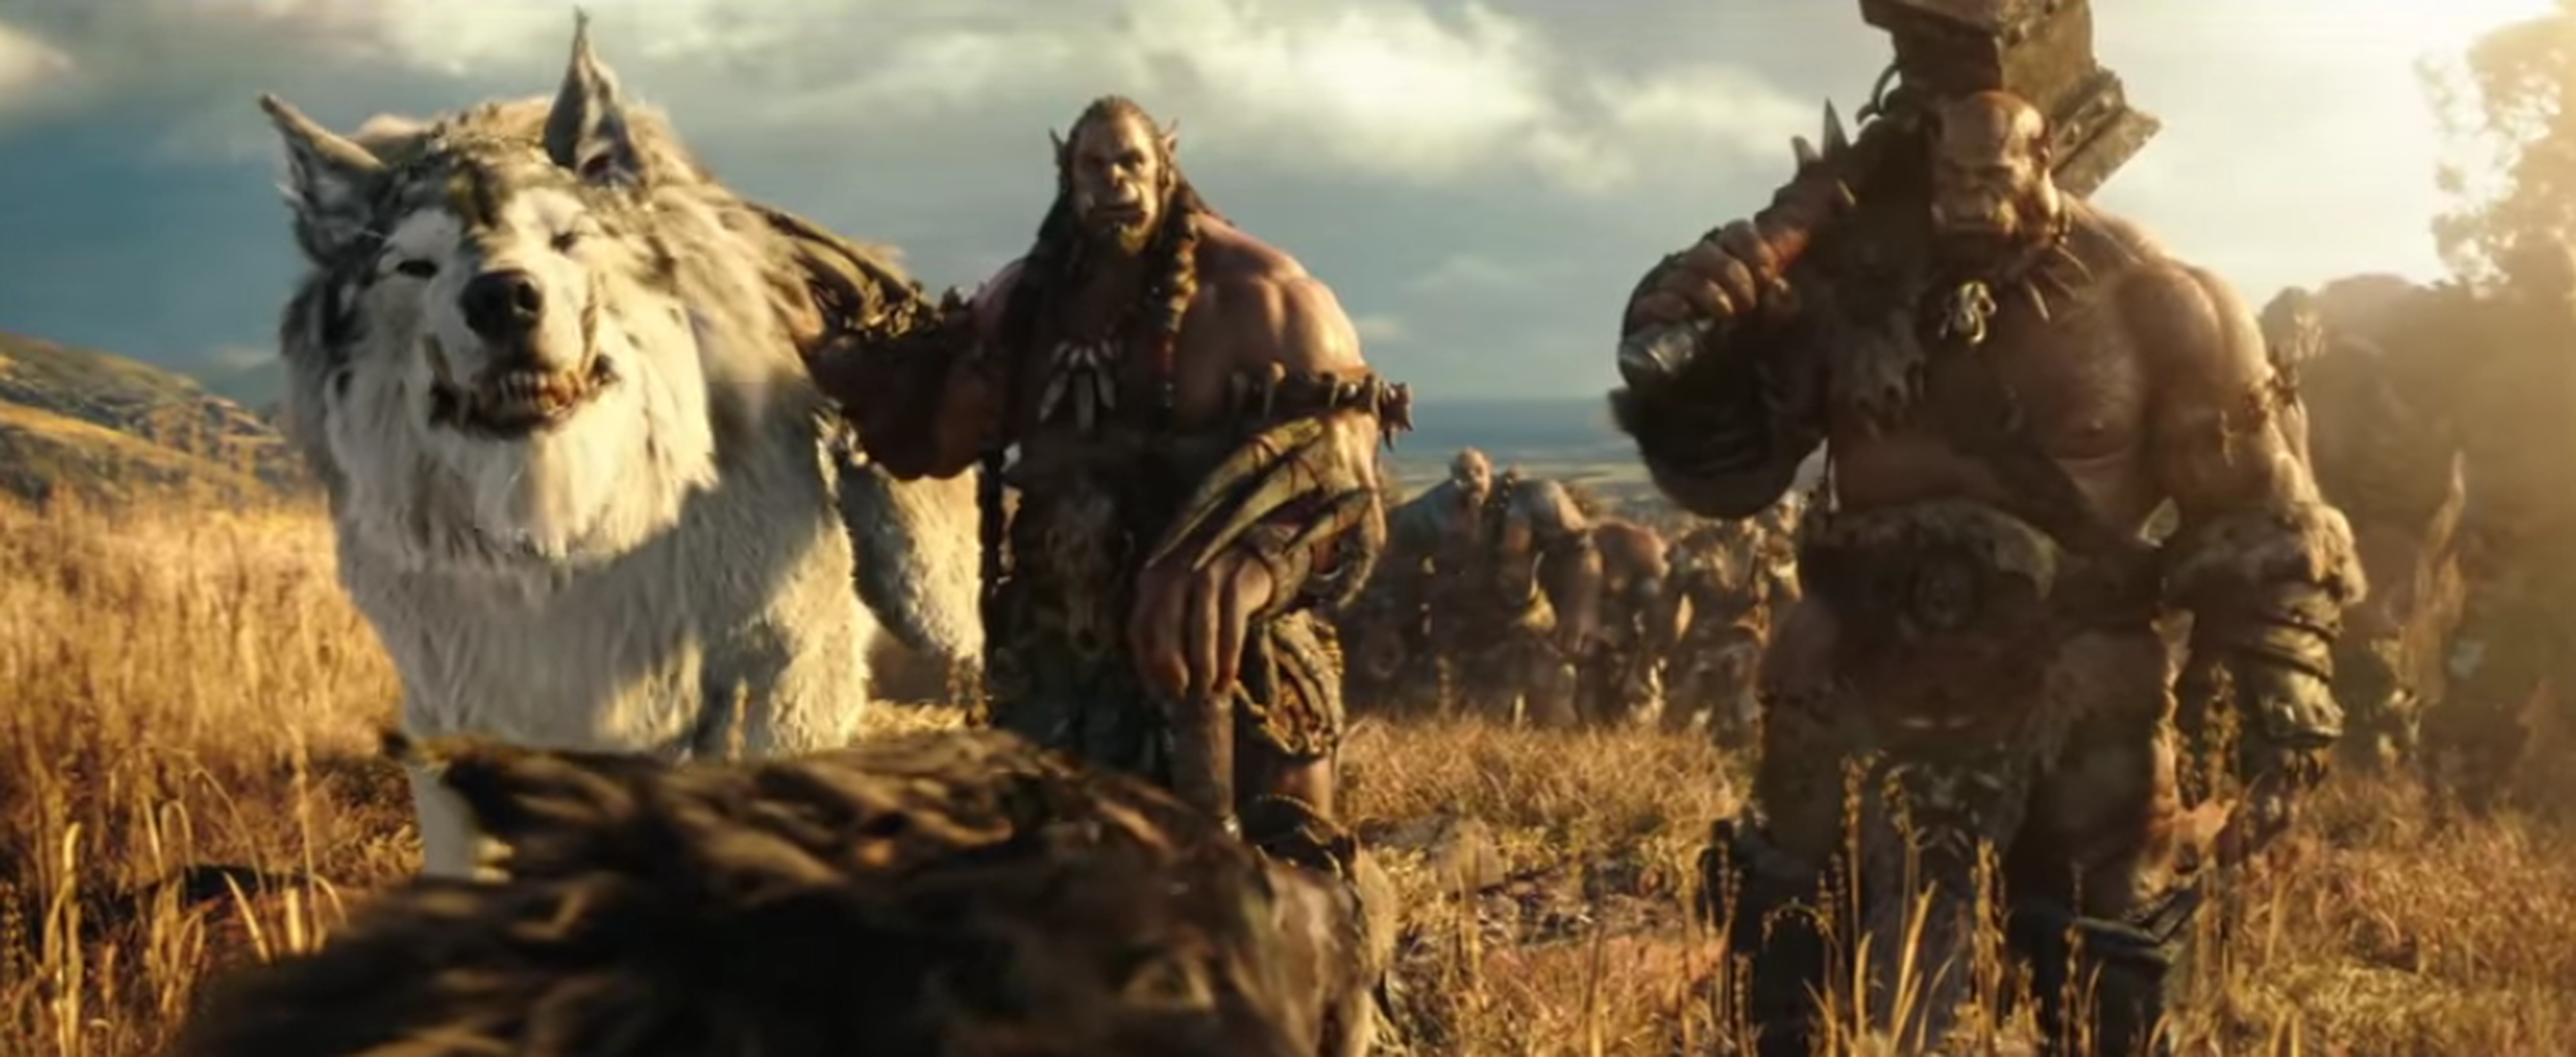 Warcraft: el origen - Crítica de la adaptación del juego de Blizzard